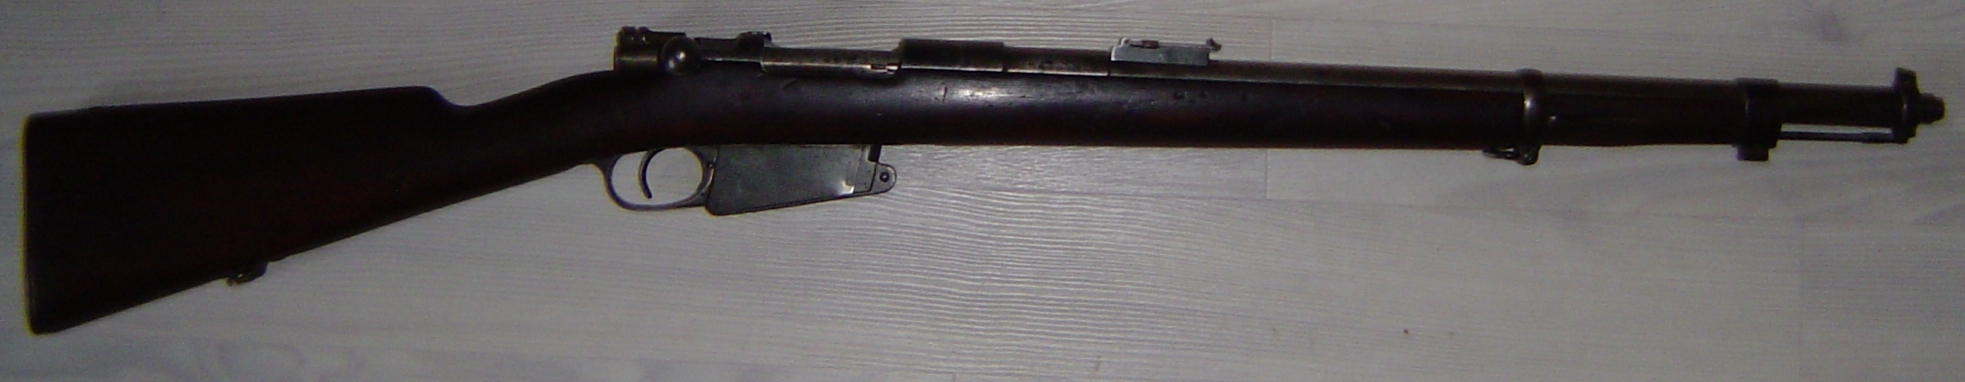 Carabine modle 1889 avec baonnette